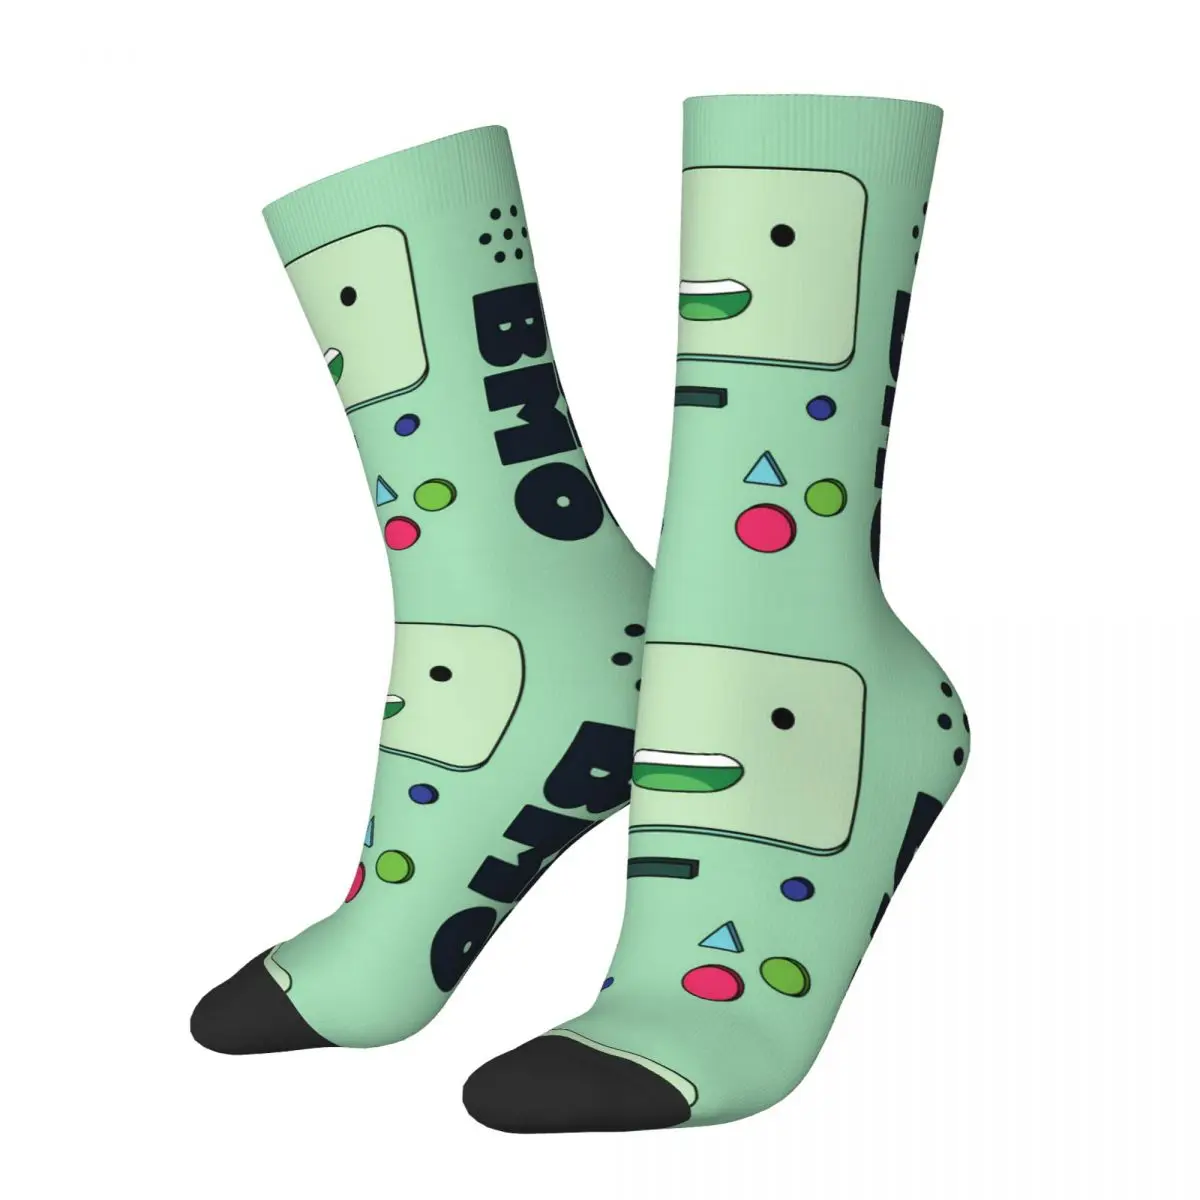 

Забавные сумасшедшие носки для мужчин, персонажи мультфильмов о время приключений в стиле Харадзюку, персонажи мультфильмов, качественные носки с принтом, бесшовный подарок